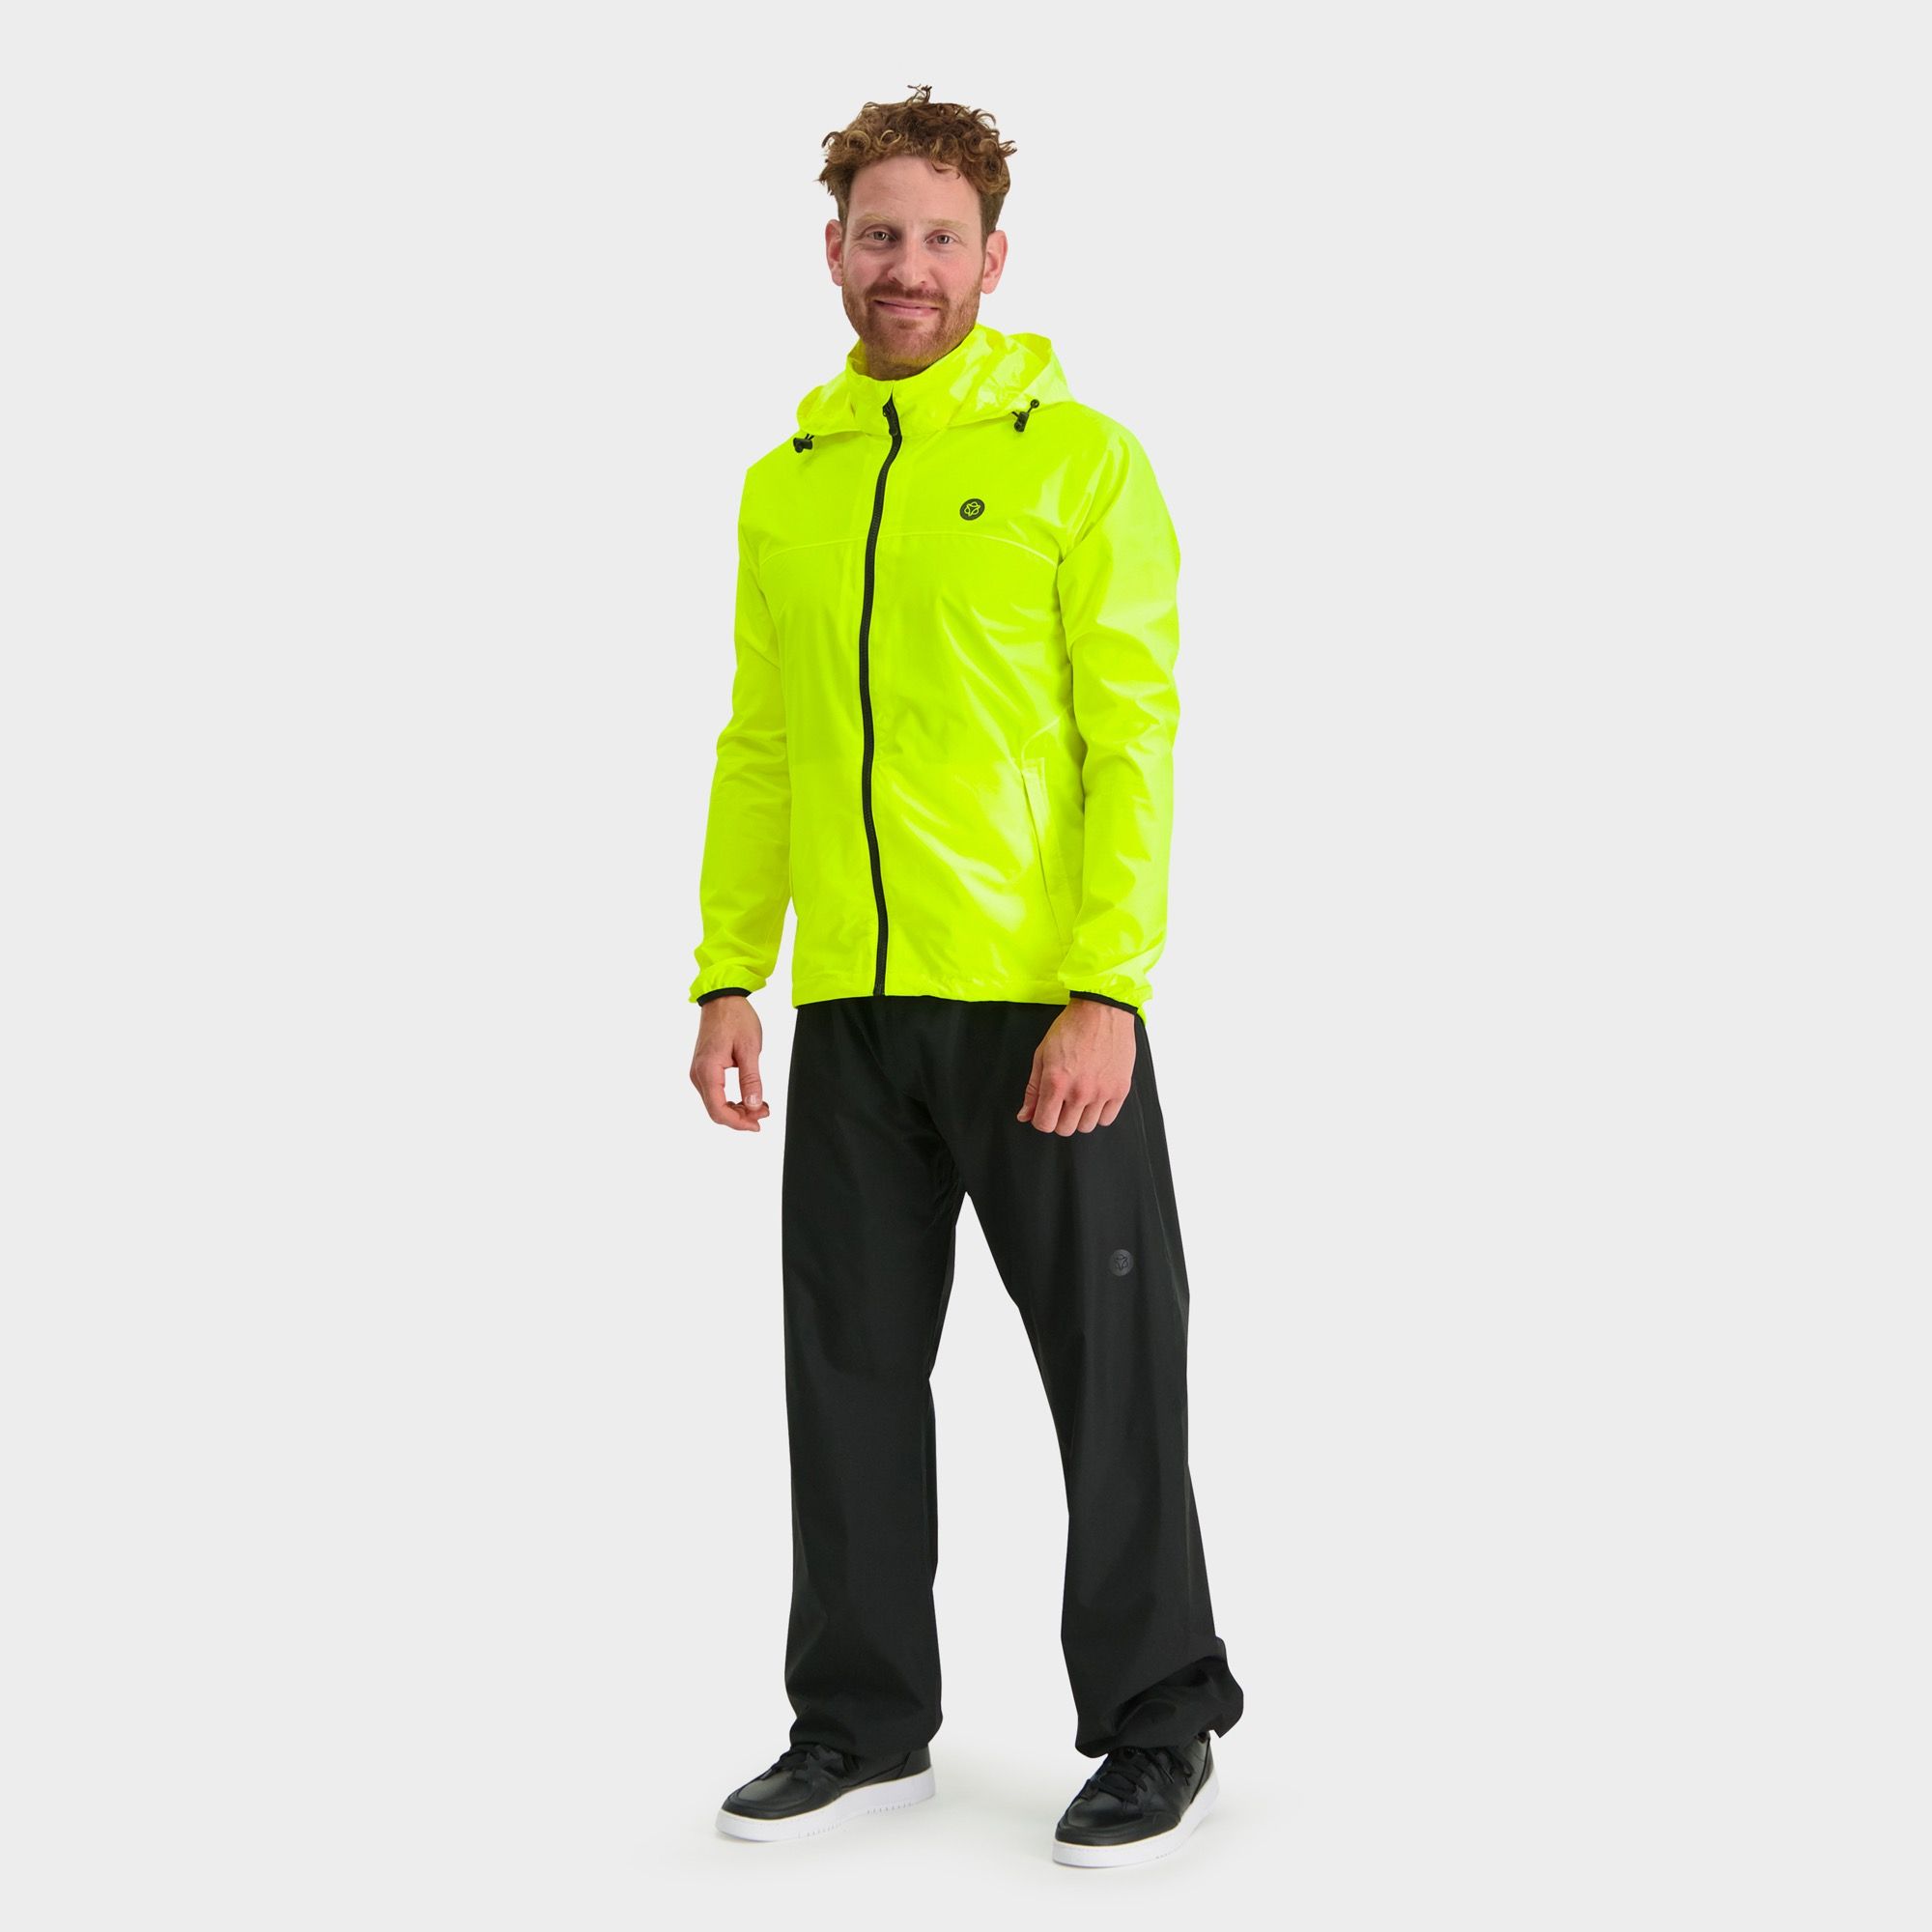 Reflektierend AGU GO Essential Regenanzug Herren und Damen Atmungsaktive Regenbekleidung von 100% Recycltem Polyster Regenkombi Fahrrad Unisex 